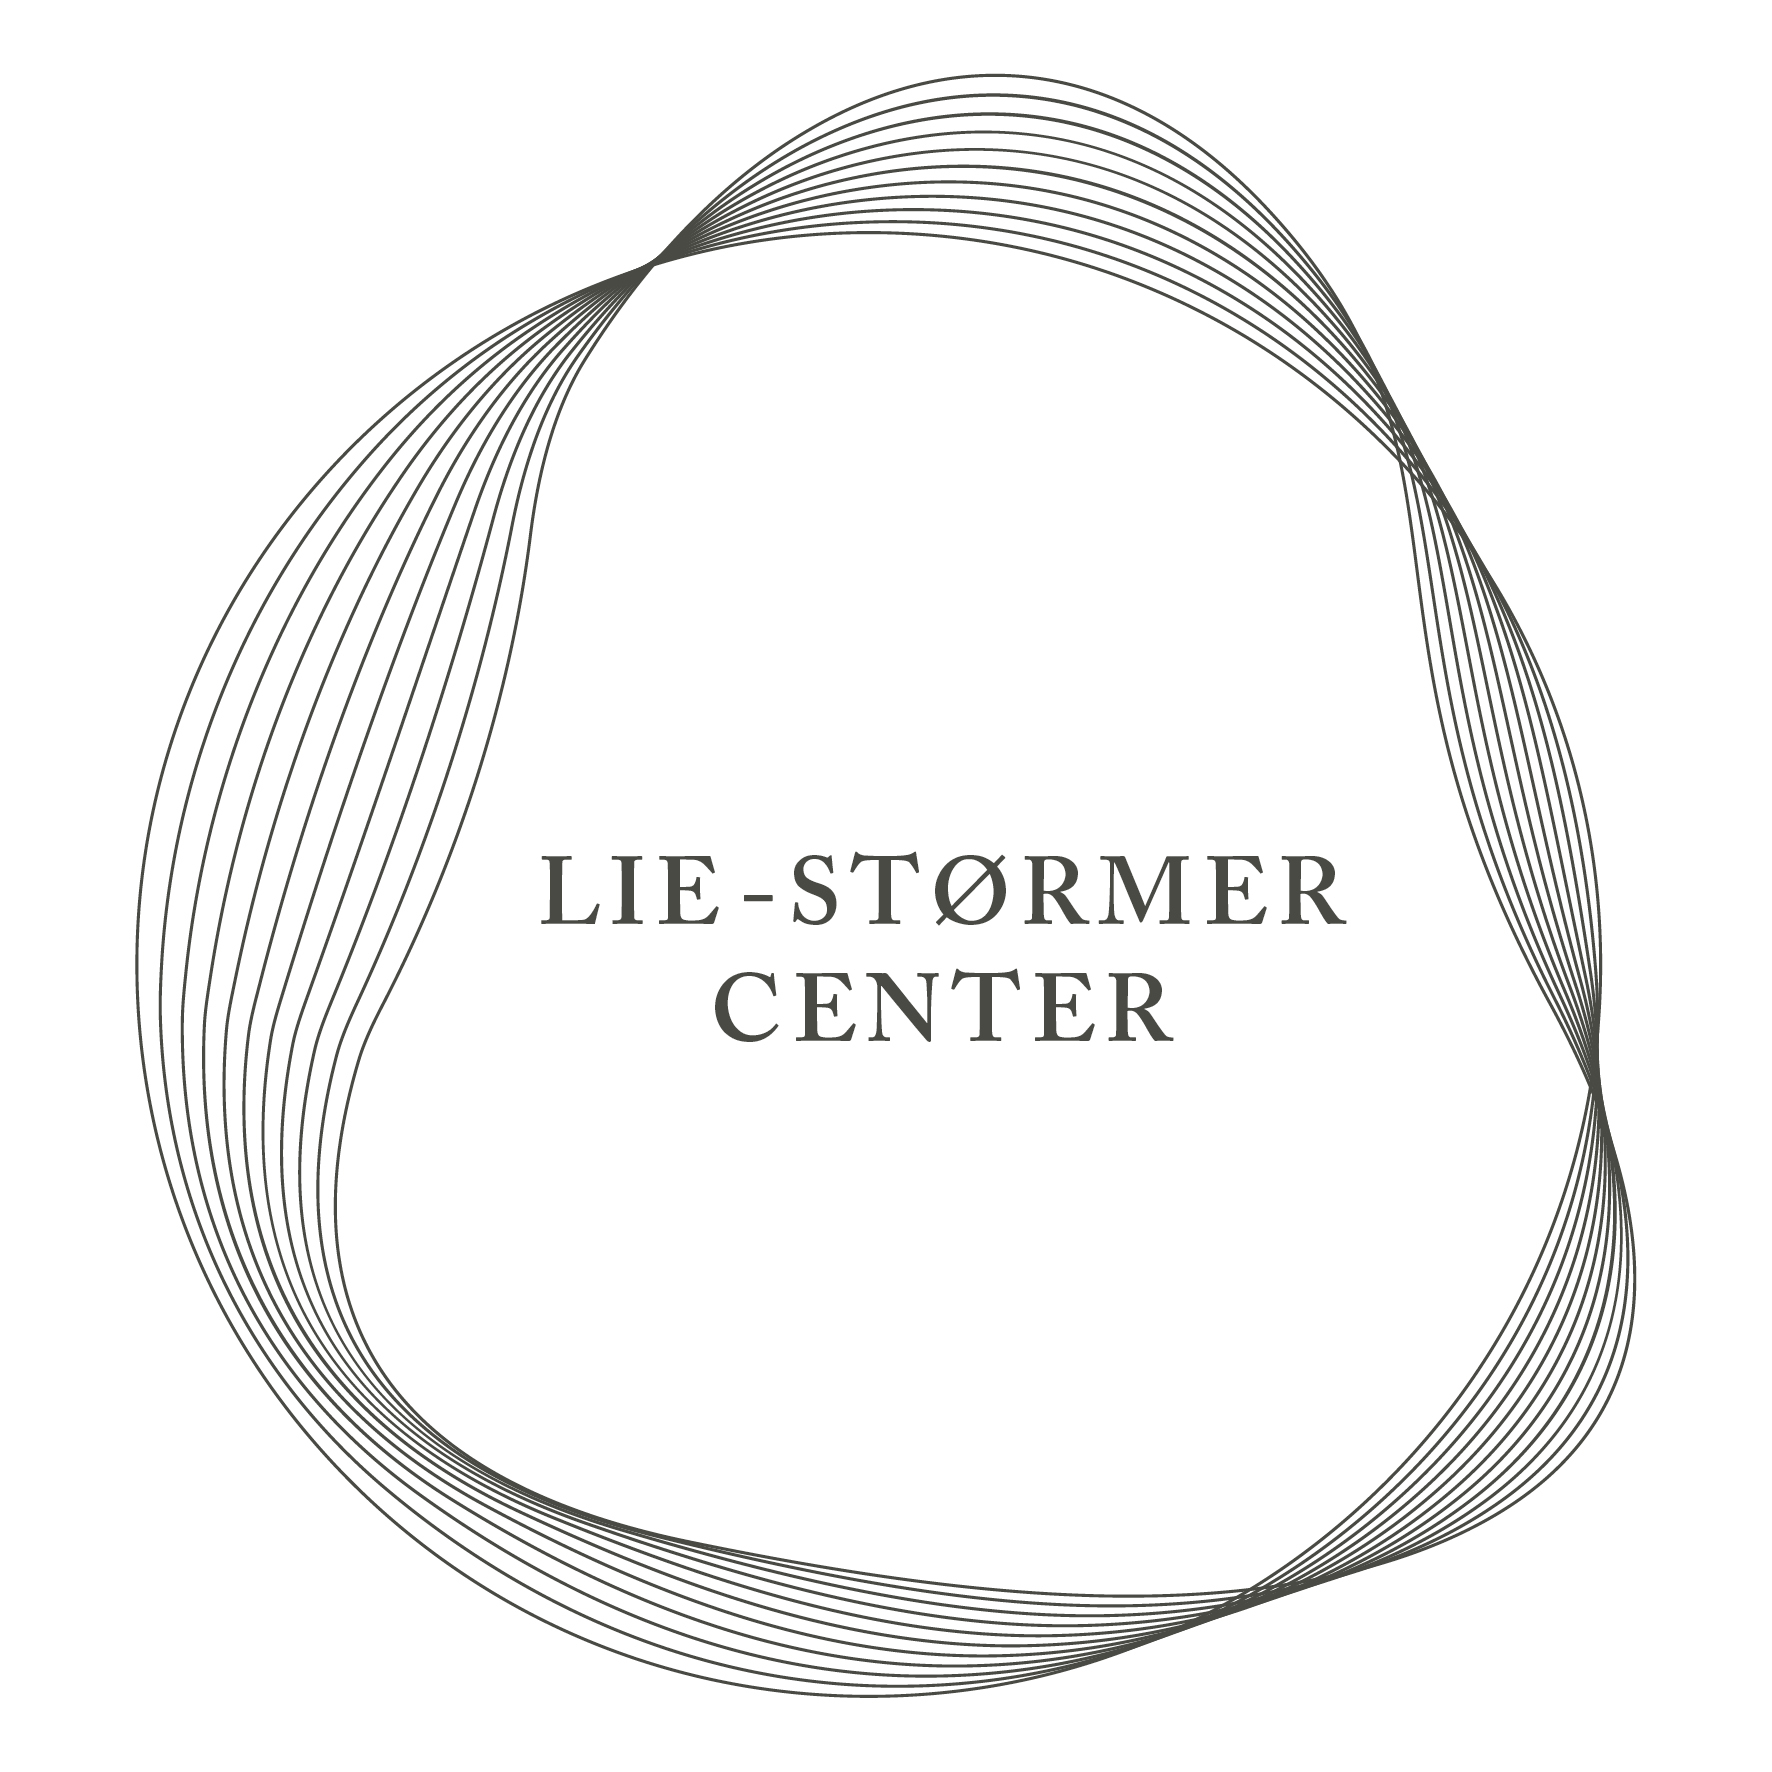 the Lie-Størmer Center